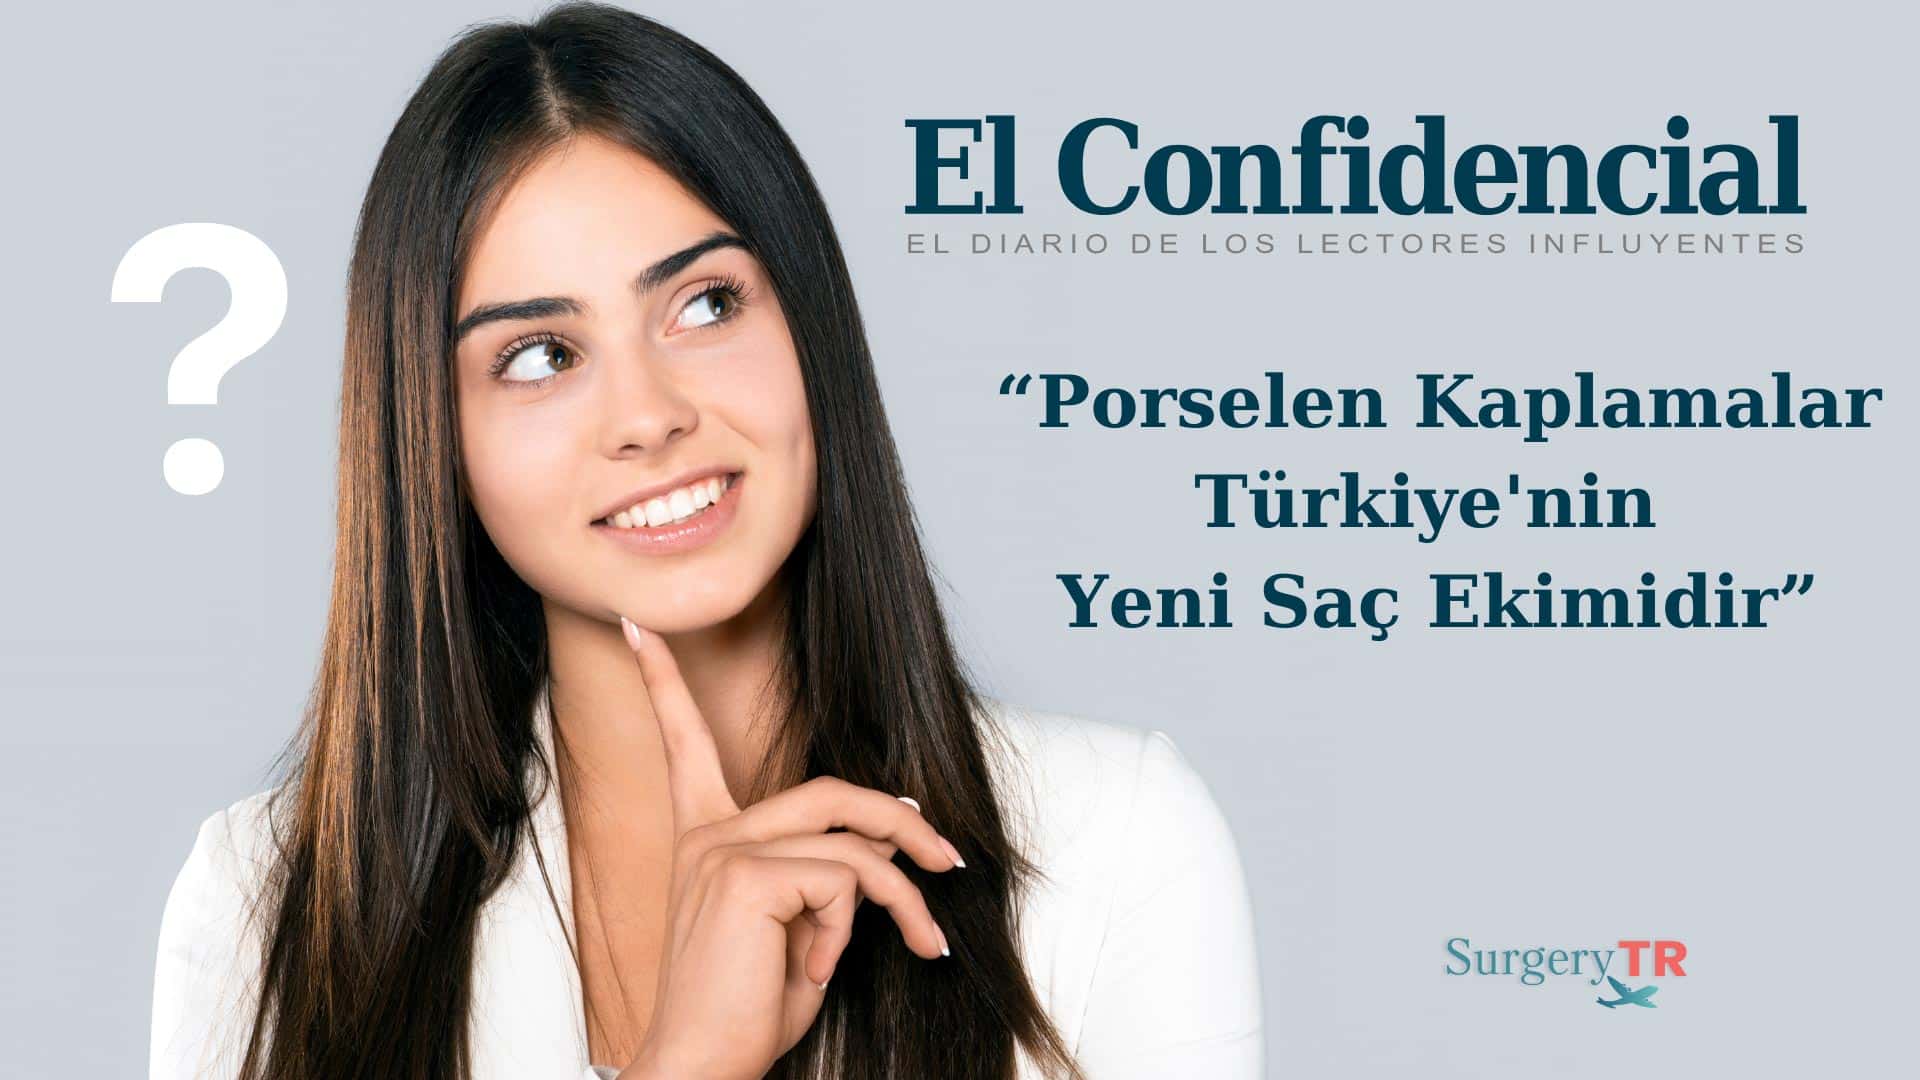 El Confidencial “Porselen Kaplamalar Türkiye’nin Yeni Saç Ekimidir” Diyor.